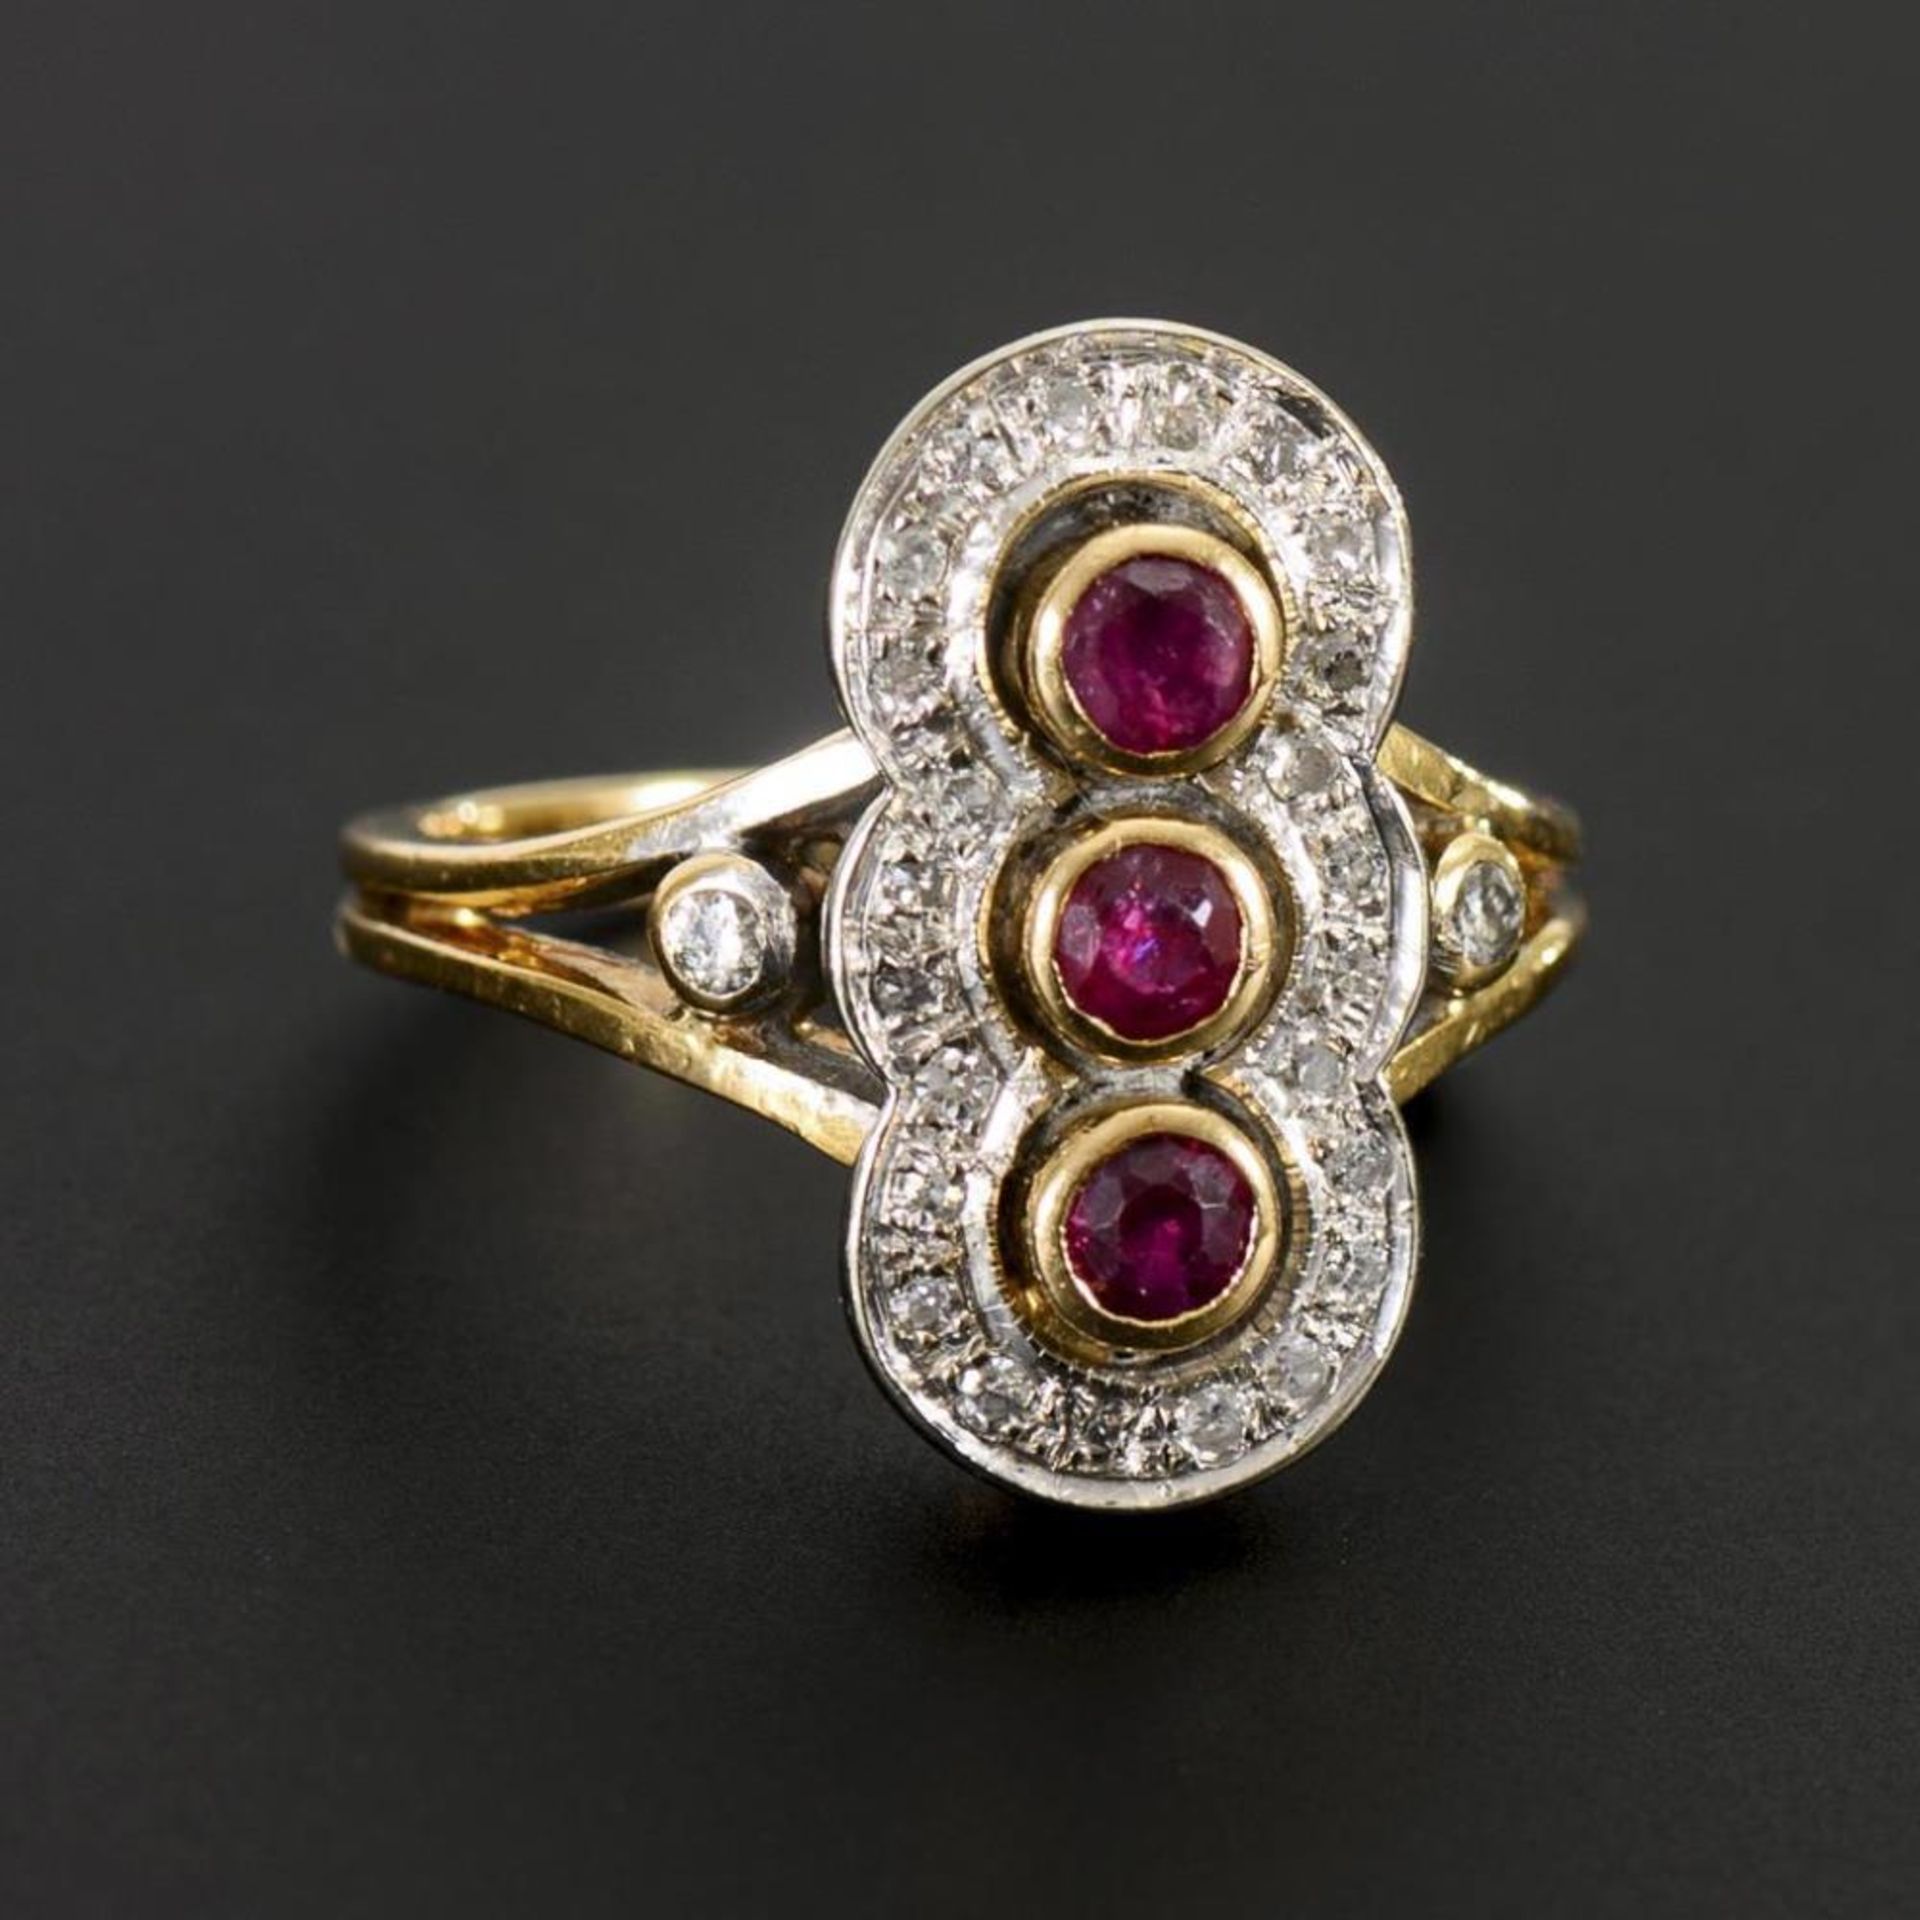 Moderner Ring mit Rubinen, Brillanten und Diamanten. - Image 2 of 2